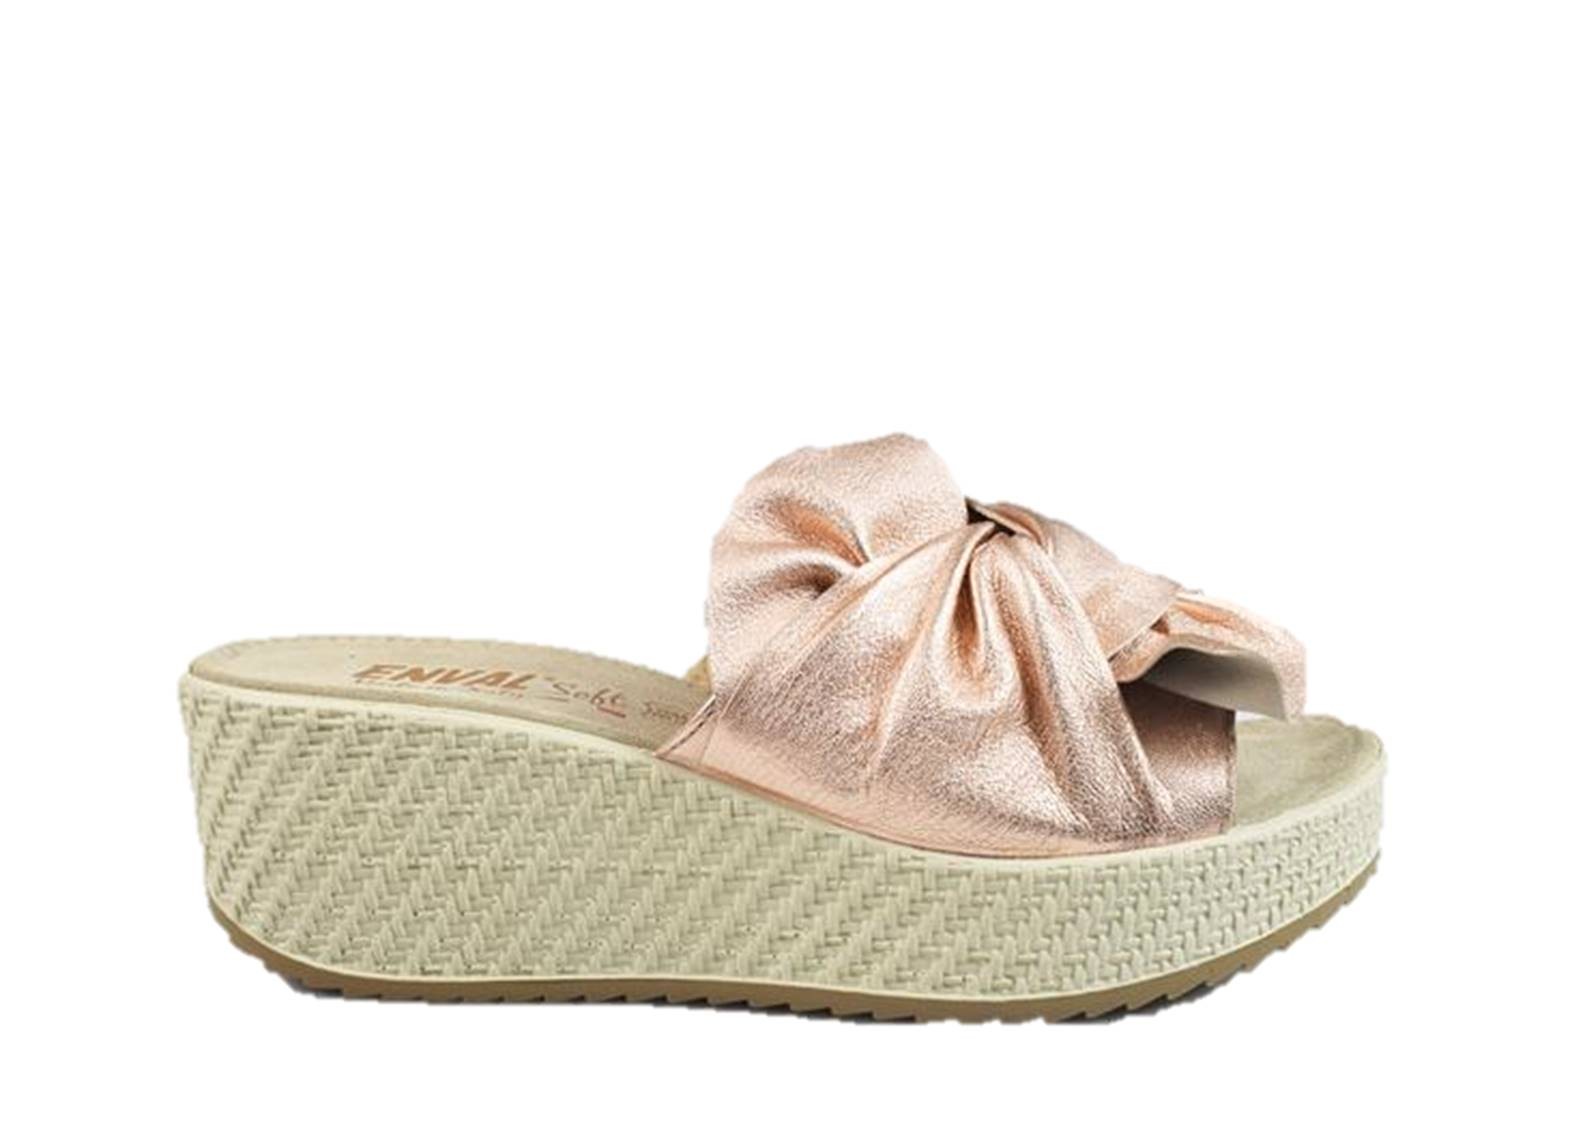 ENVAL Soft 3291266 sandali zeppa pelle laminato cipria donna | eBay